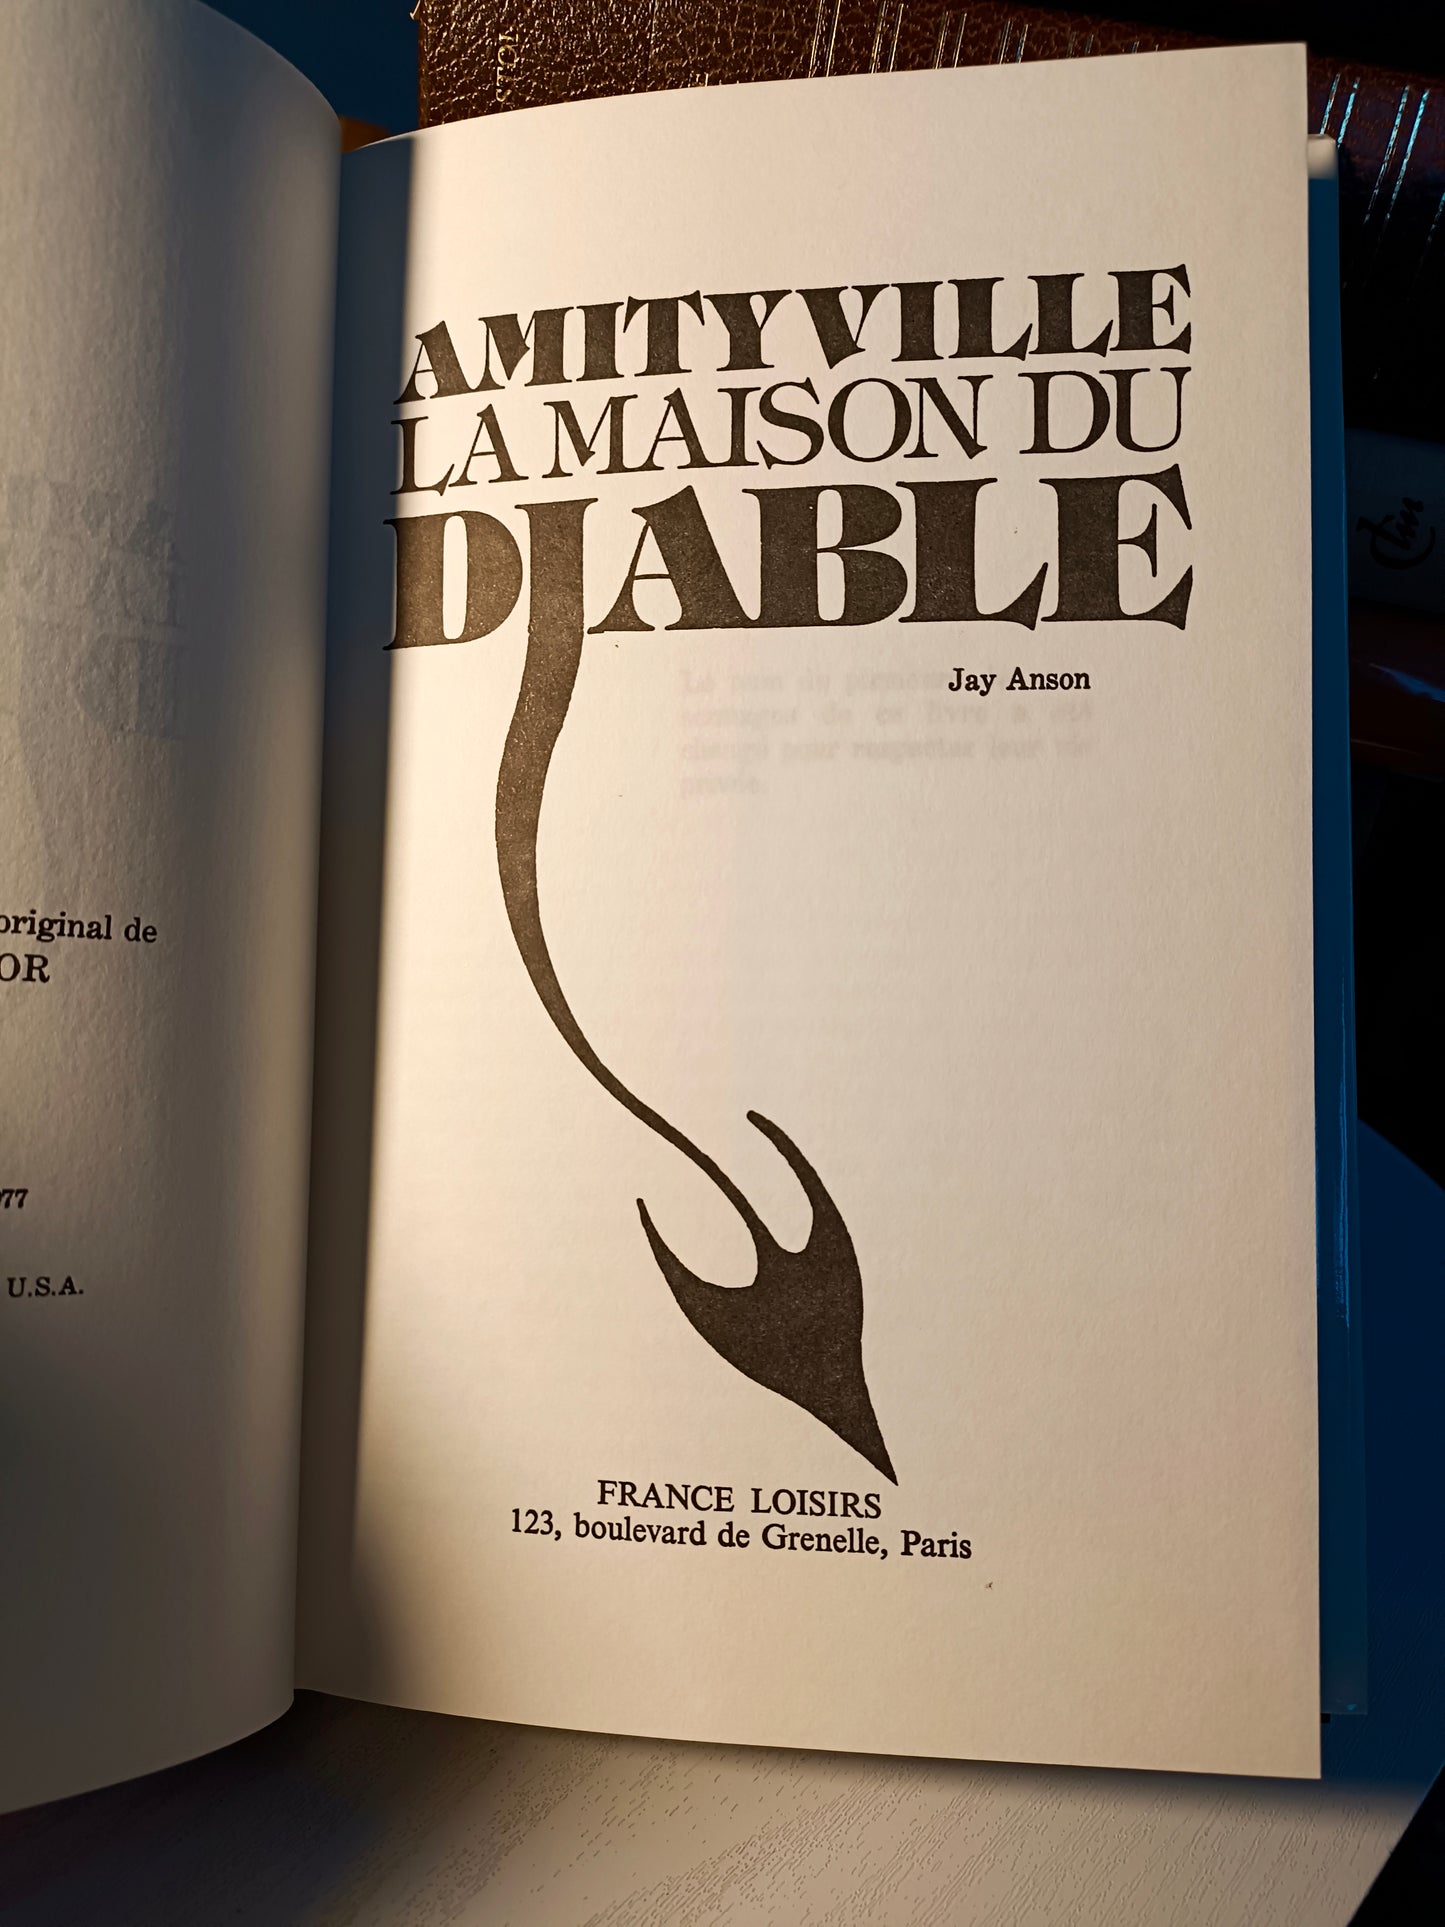 LCIN03 - Amityville - La maison du diable - Jay Anson